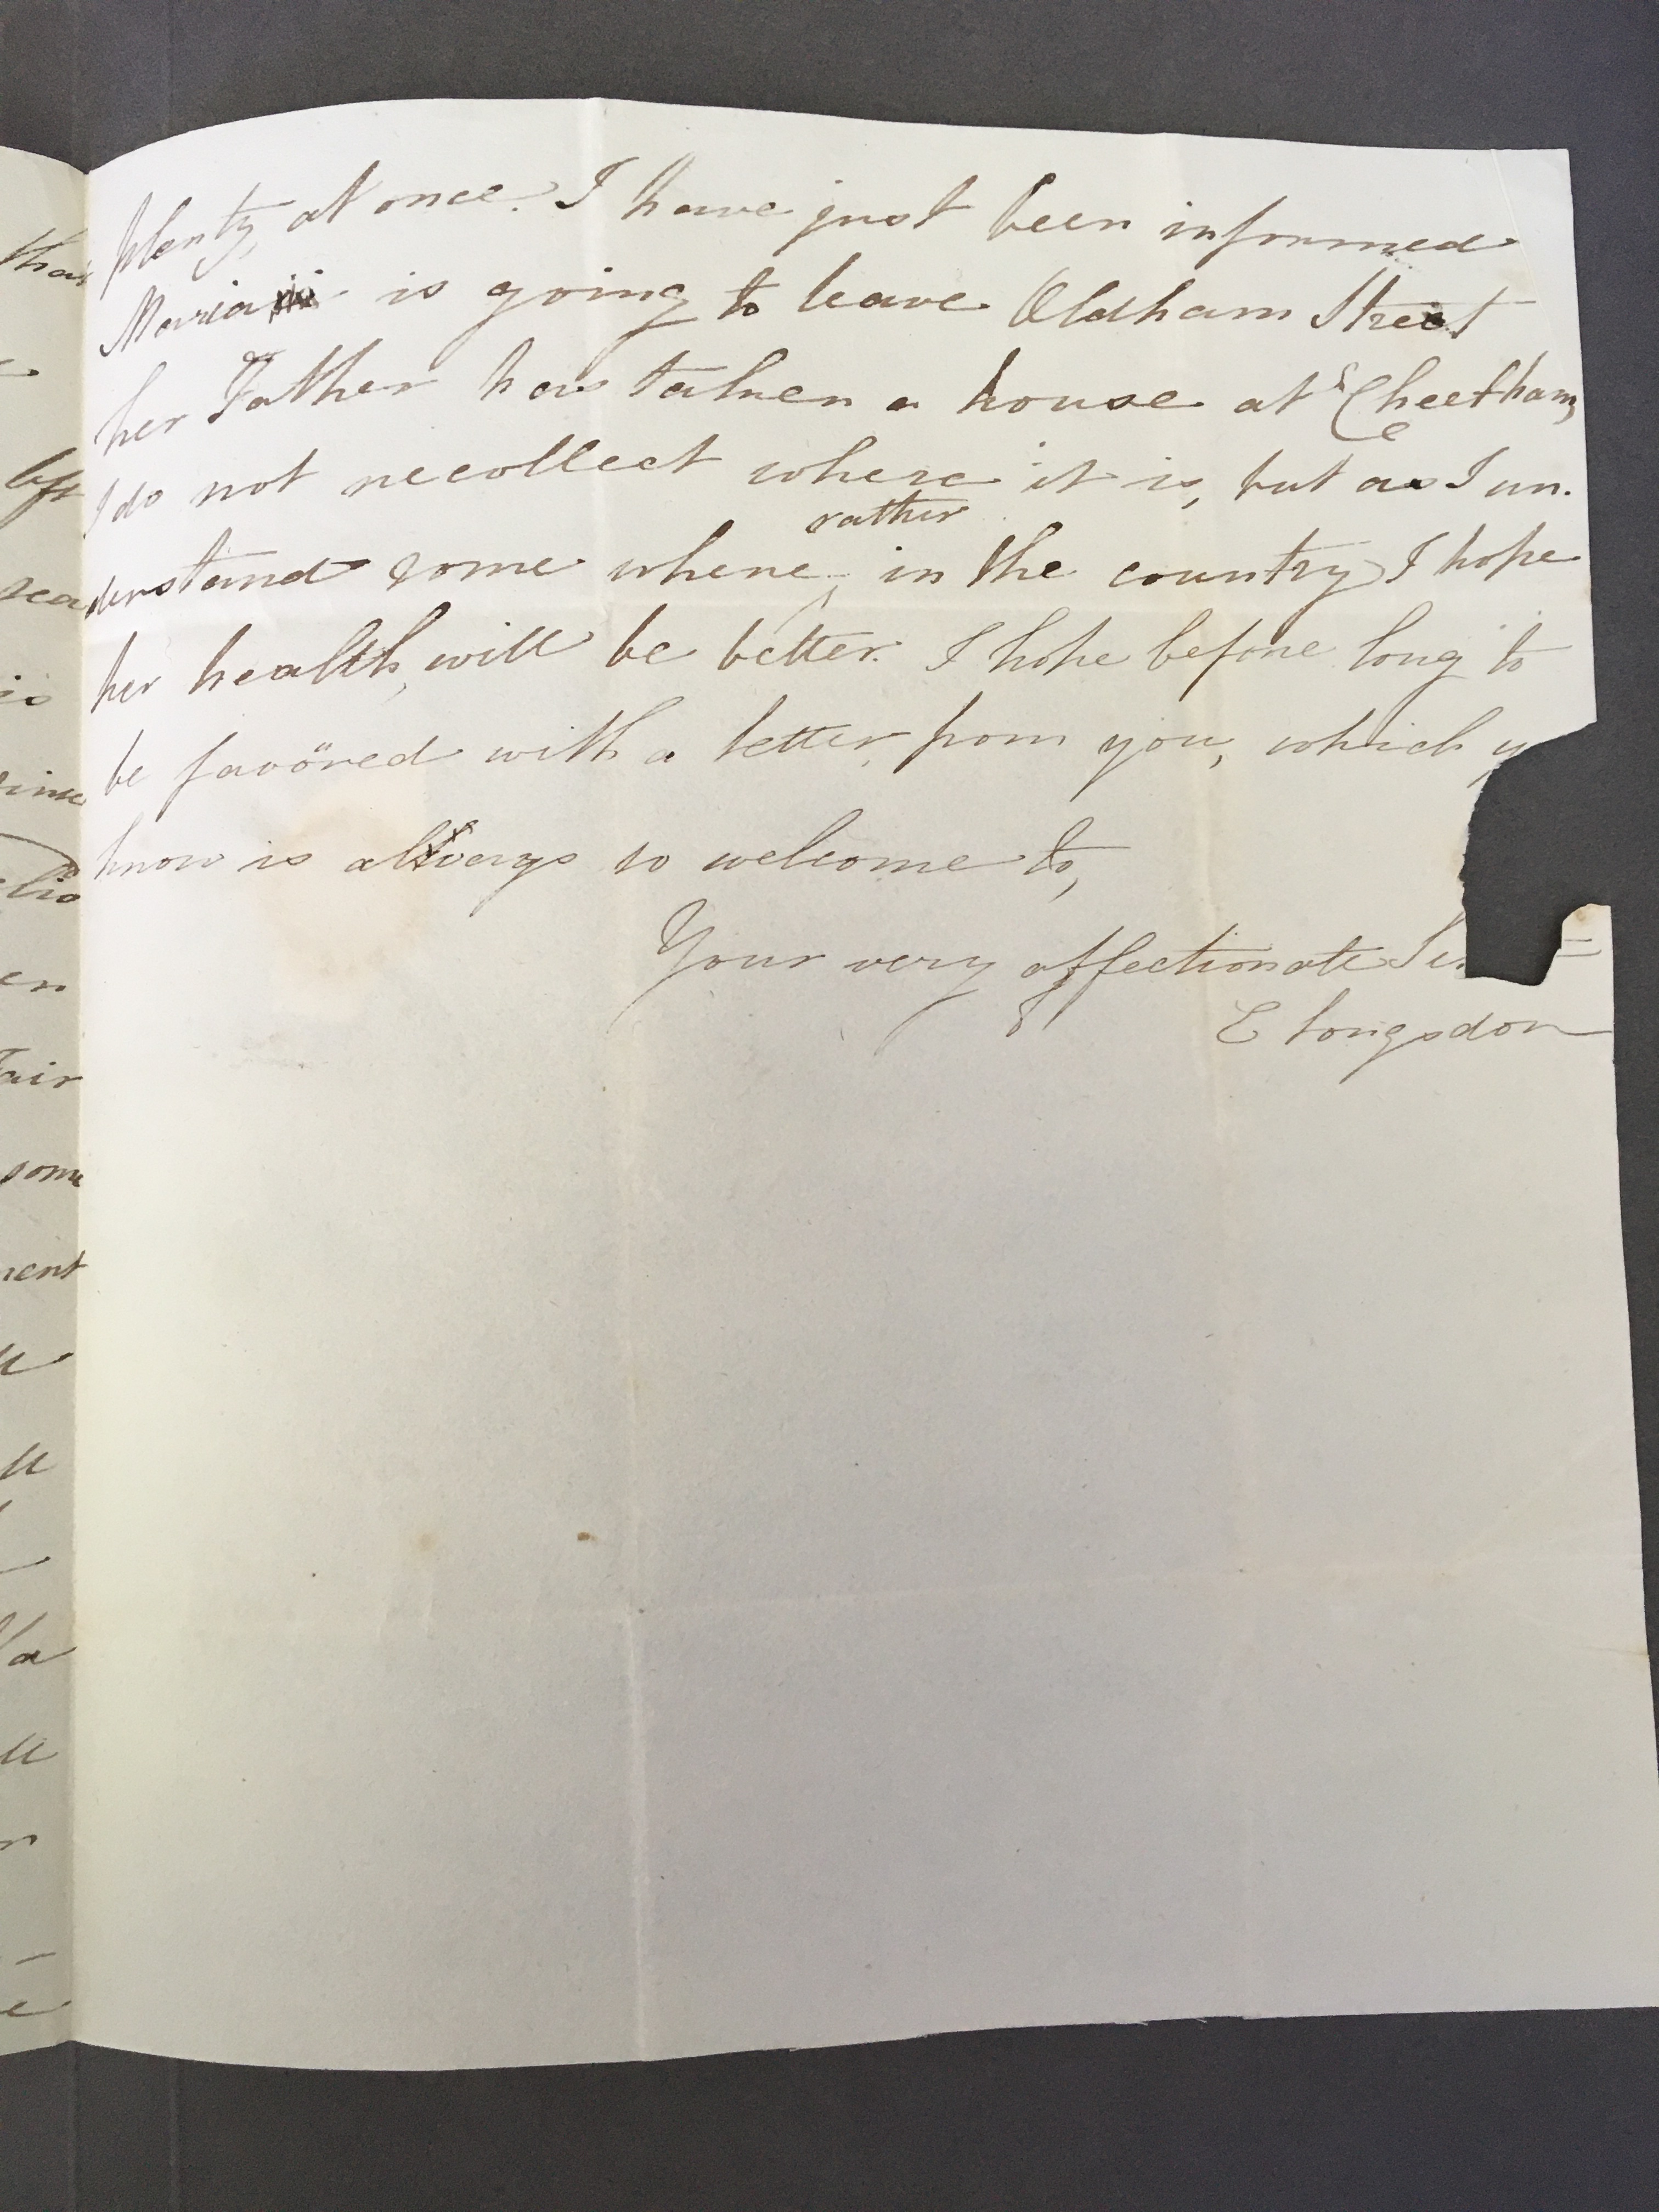 Image #3 of letter: Elizabeth Longsdon (jnr) to John Longsdon, 3 June 1810